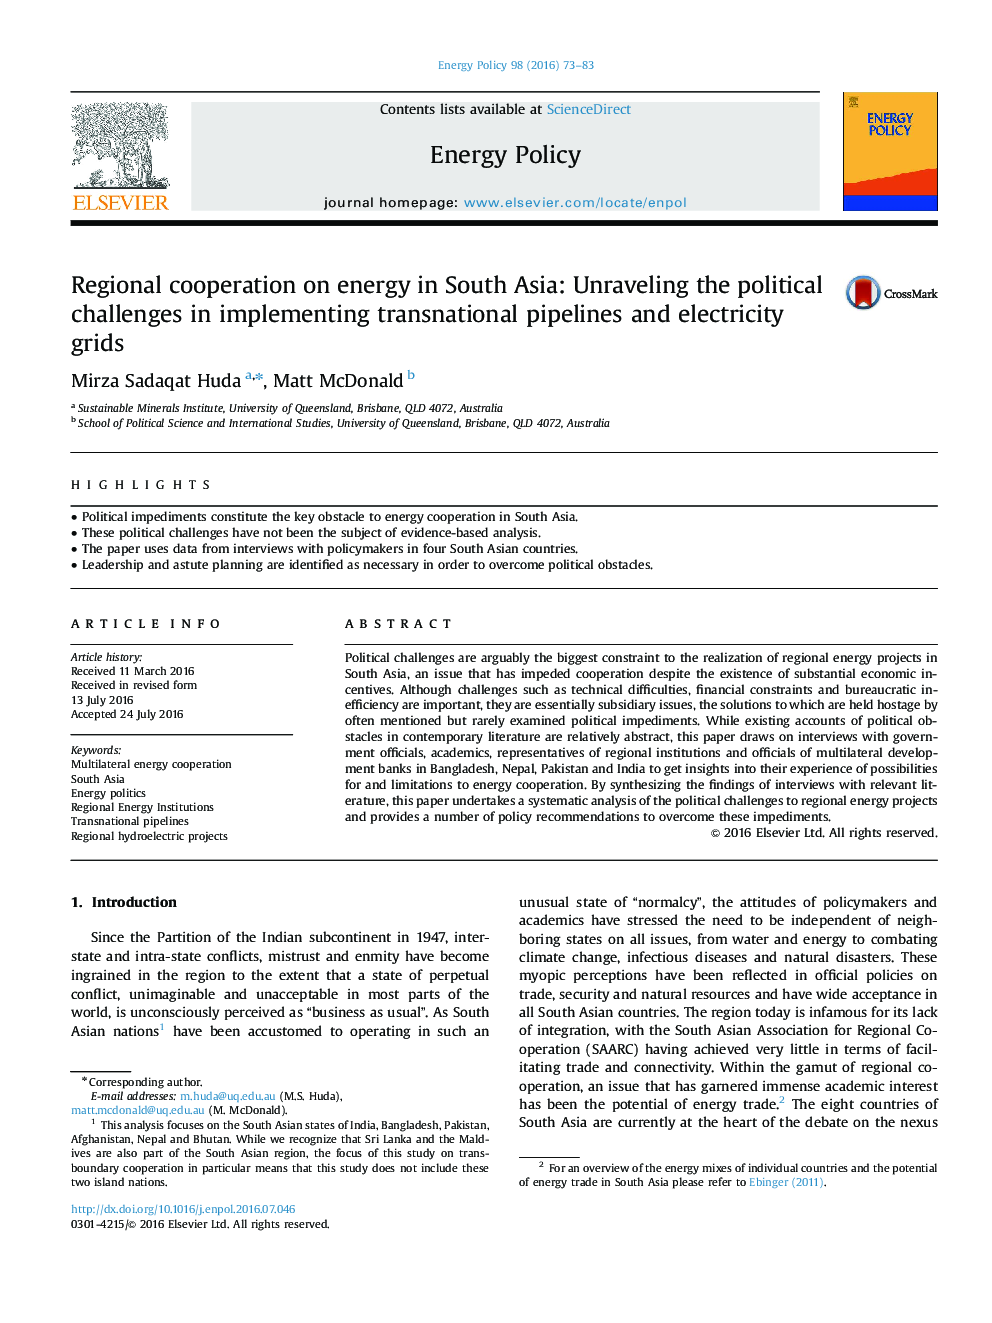 همکاری منطقه ای در زمینه انرژی در جنوب آسیا: رفع چالش های سیاسی در اجرای خط لوله های فراملی و شبکه های برق 